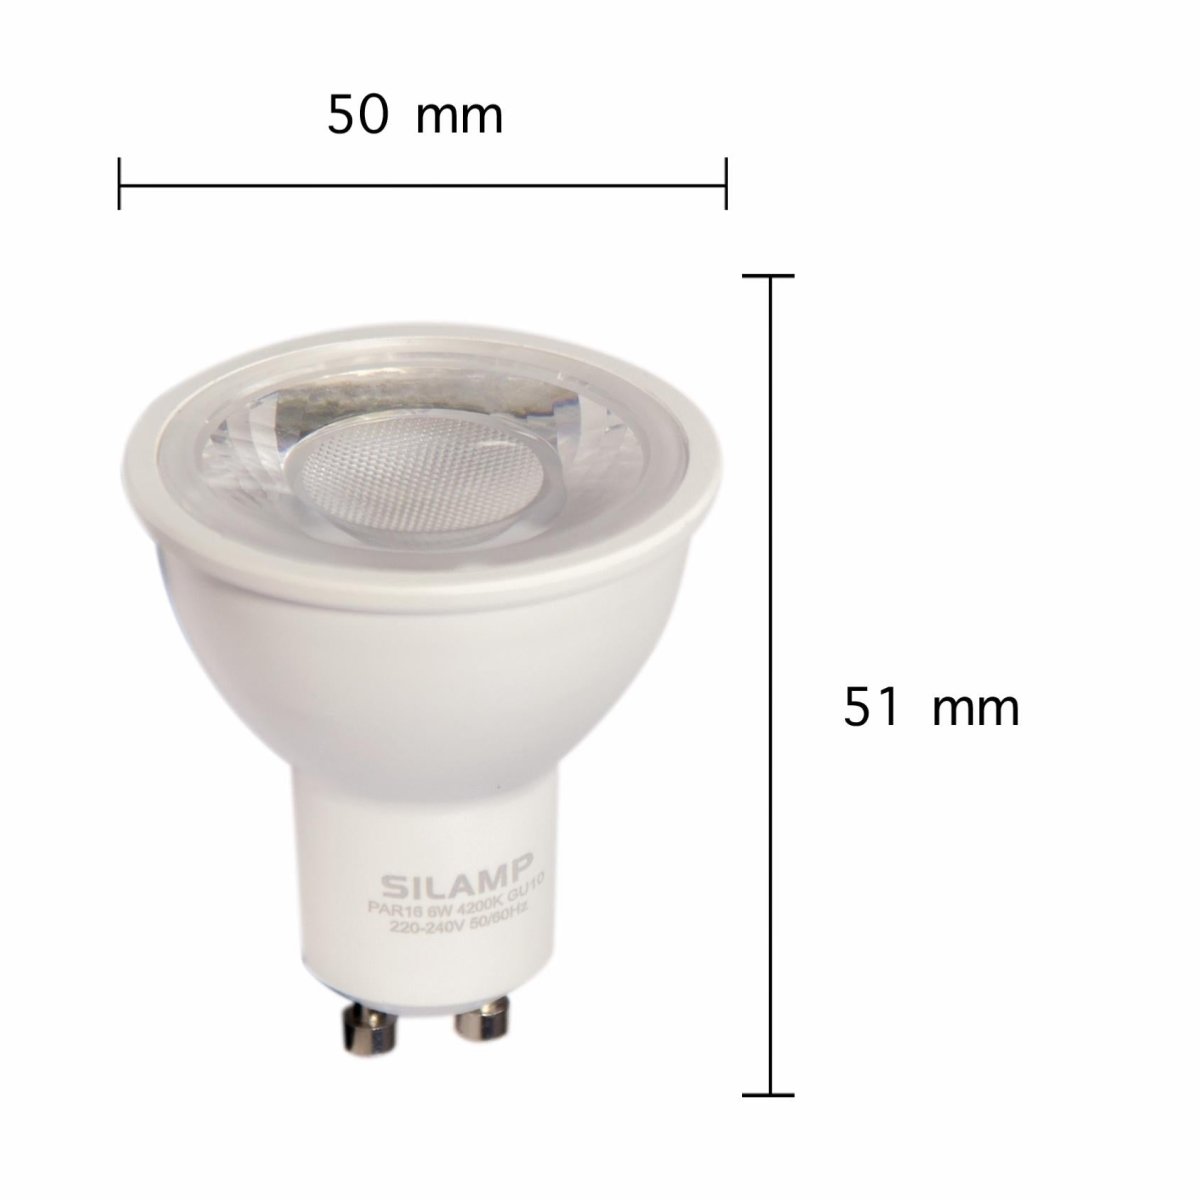 Ampoule LED GU10 Dimmable 8W 220V SMD2835 PAR16 60° (Pack de 10) - Silamp France